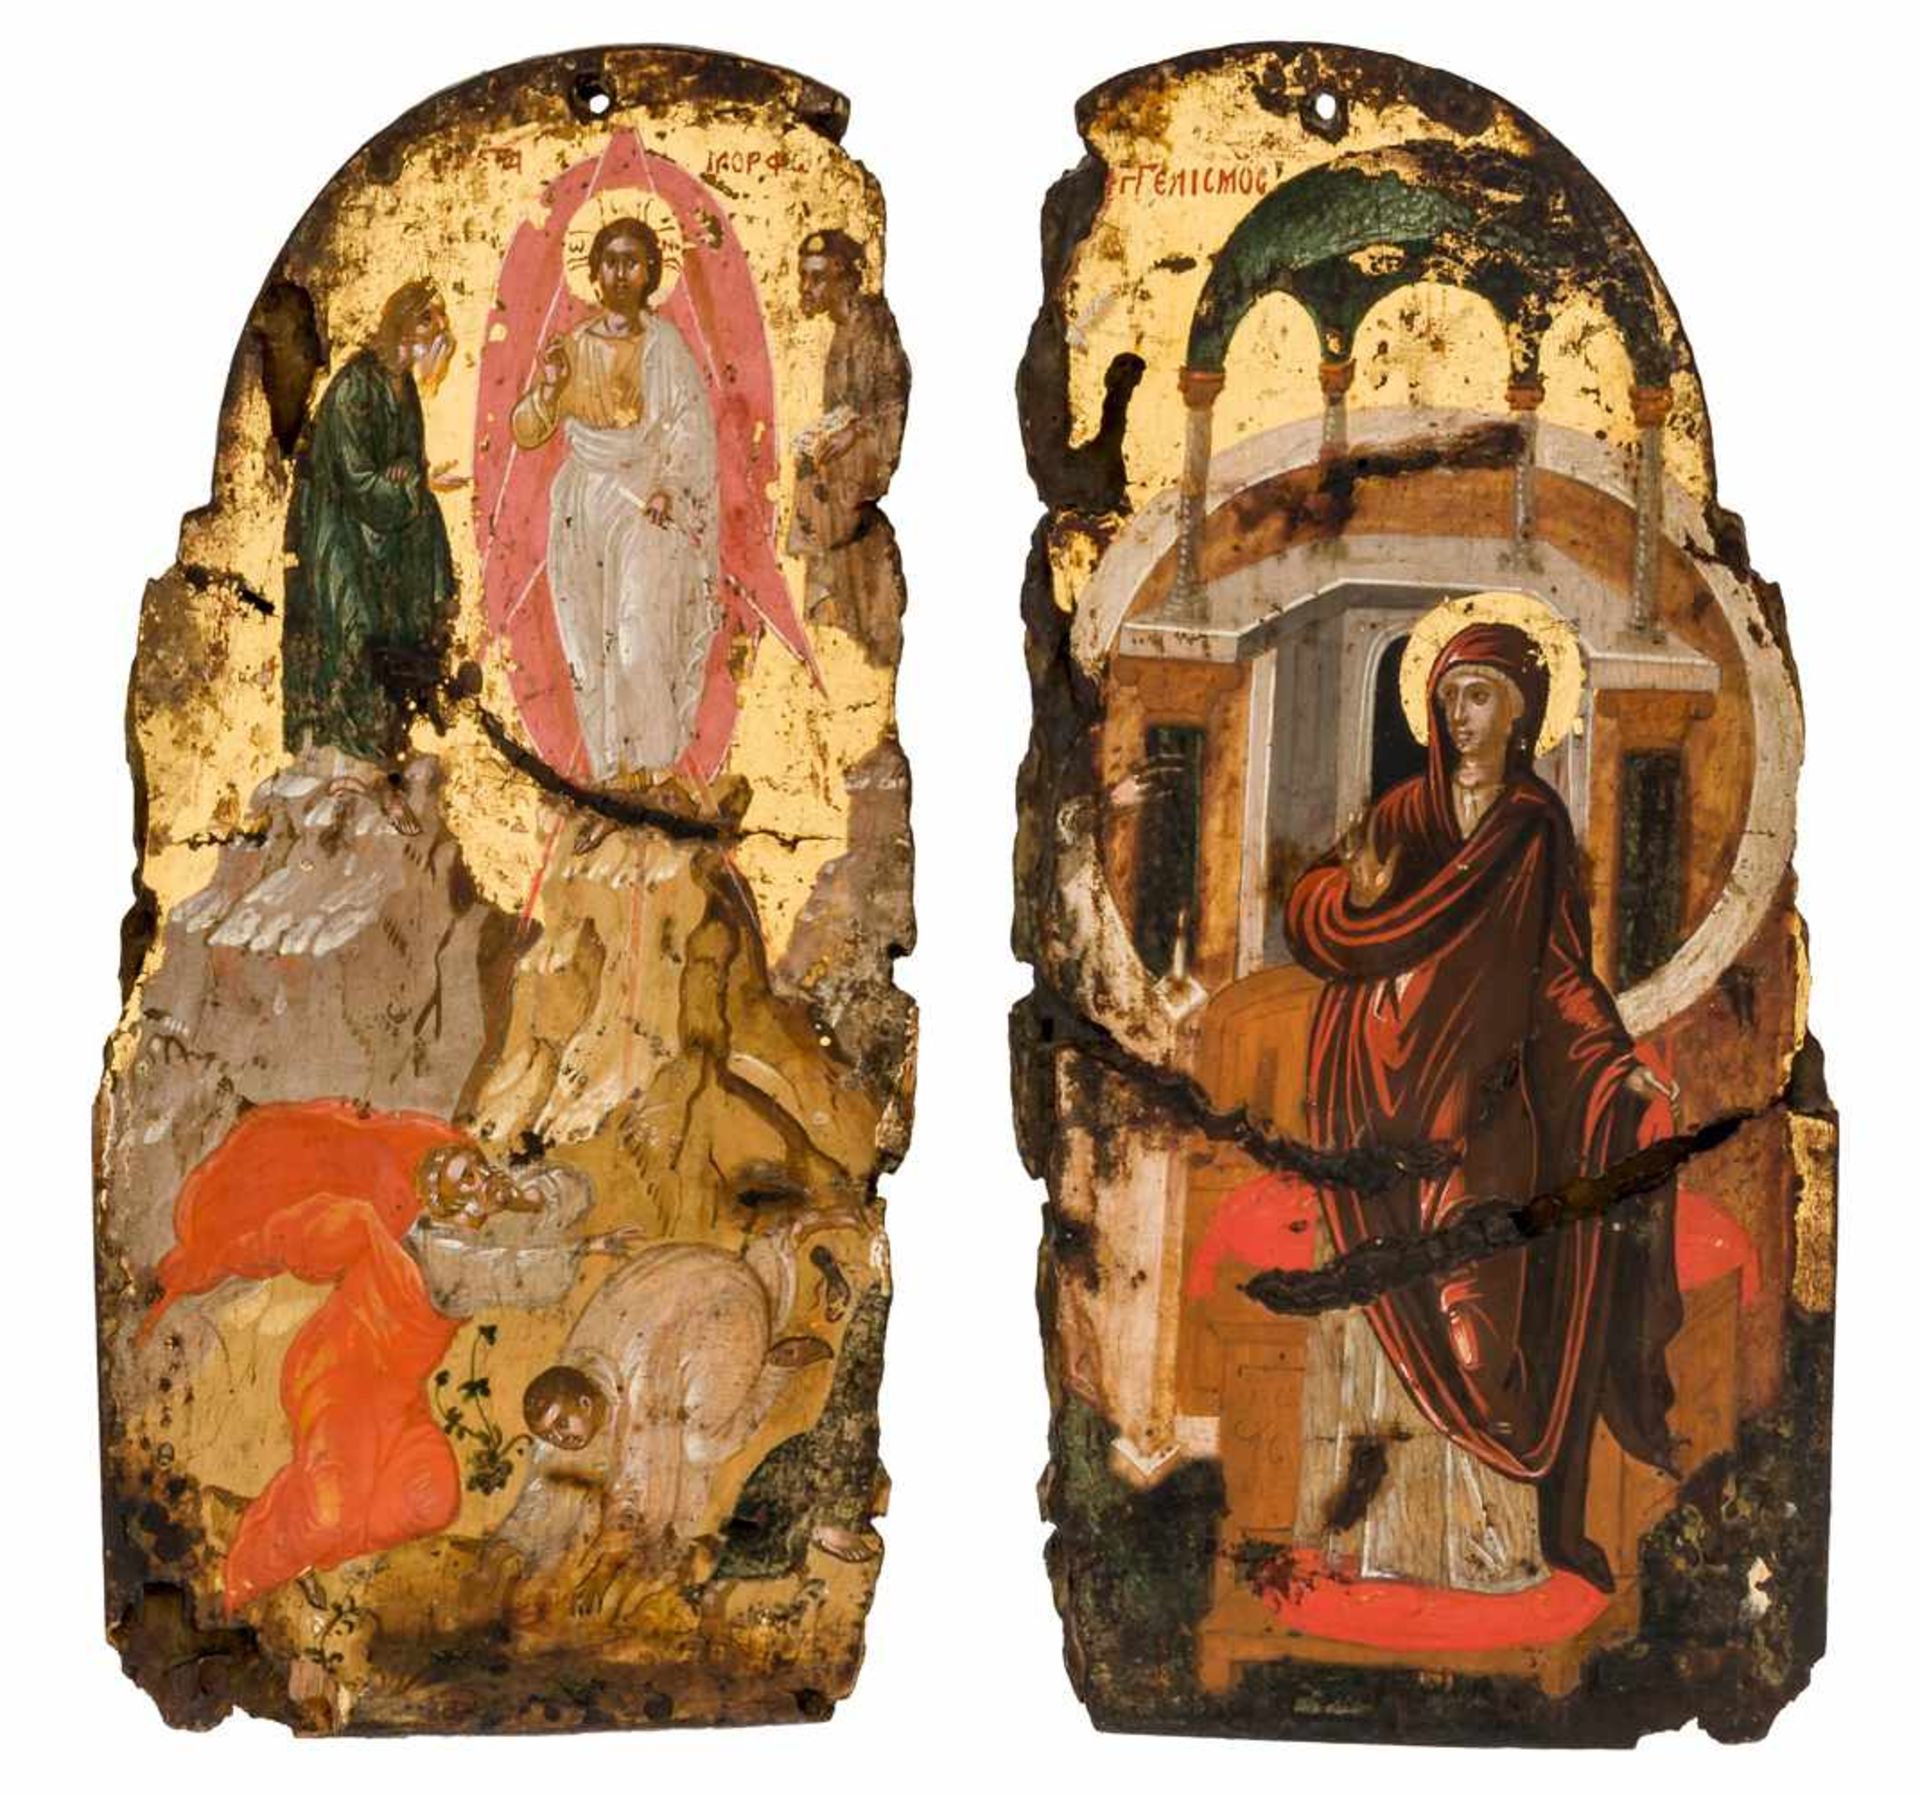 * Verkündigung & Verklärung Jesu Fragment eines griechischen Triptychons, frühes 17. Jahrhundert